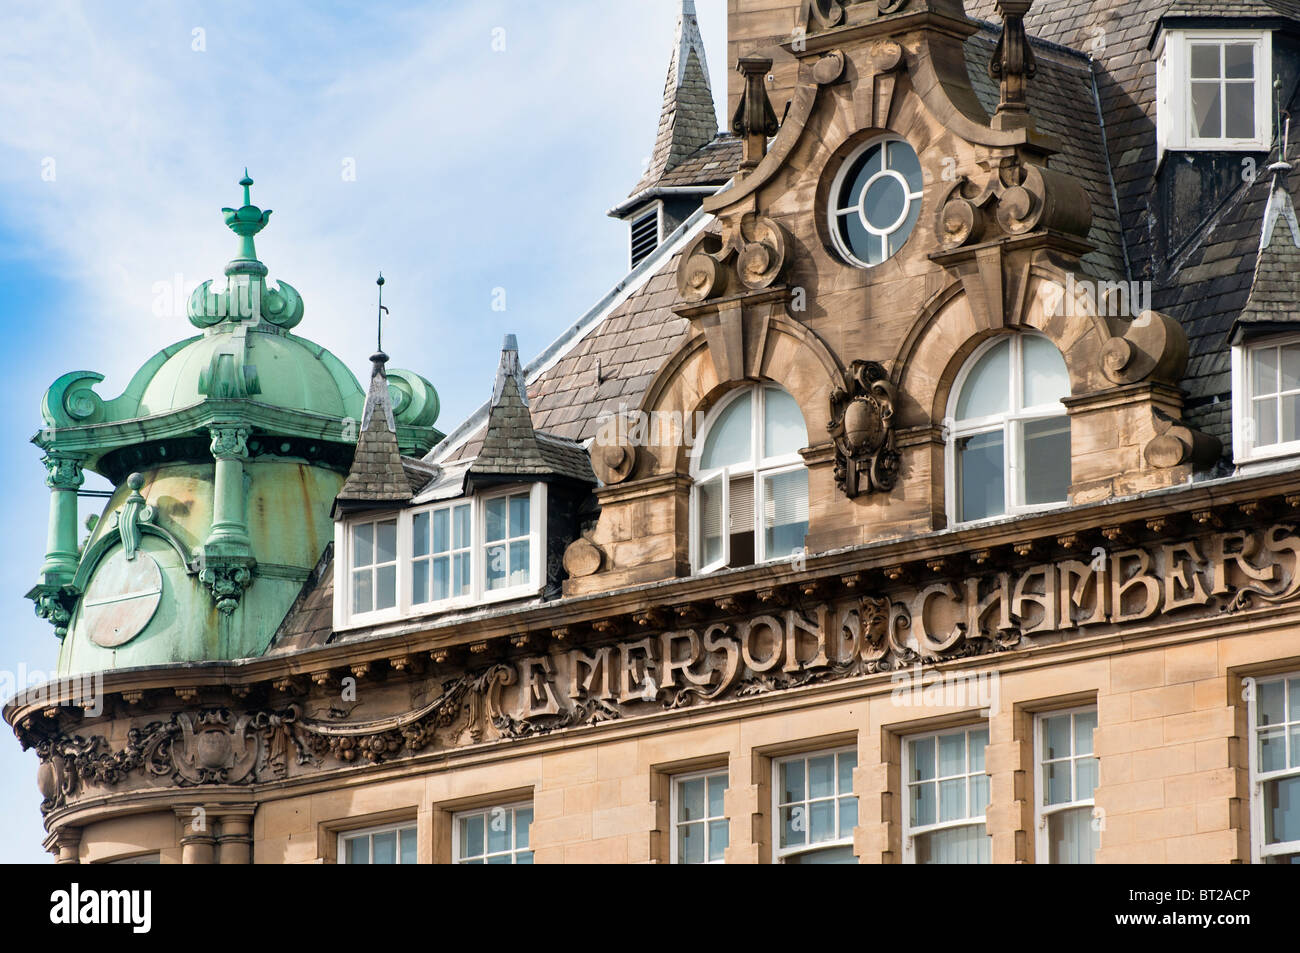 Emerson Chambers, un bâtiment classé de grade deux de style baroque dans le centre de Newcastle-upon-Tyne, en Angleterre. Banque D'Images